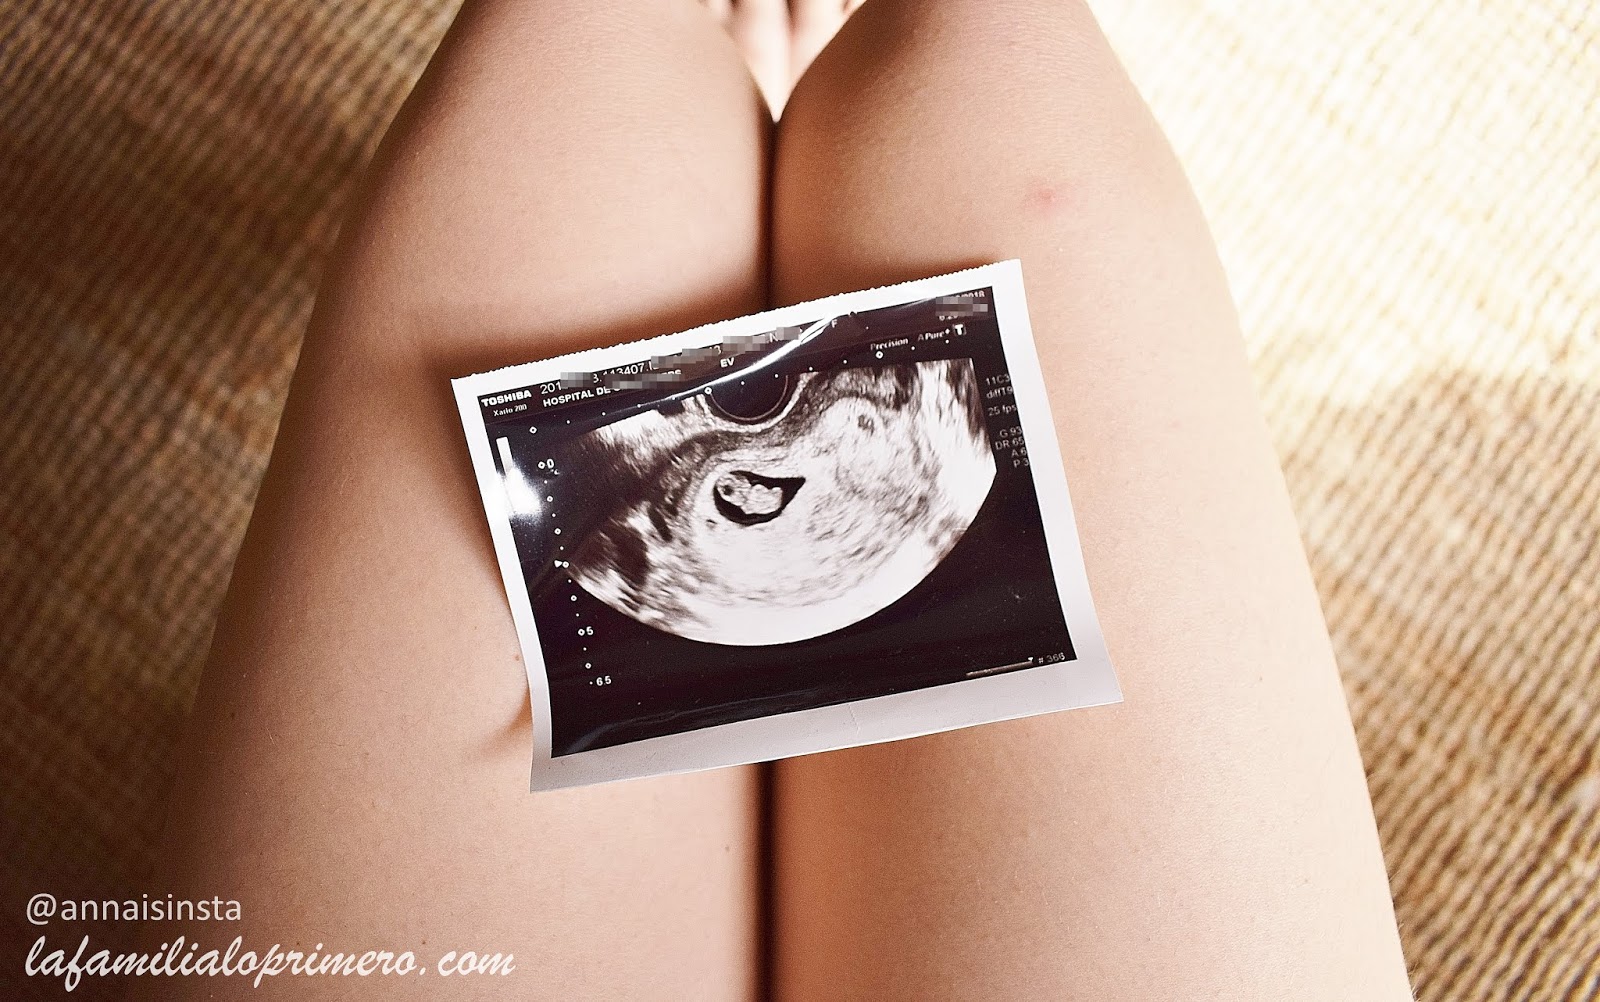 sintomas del segundo trimestre de embarazo